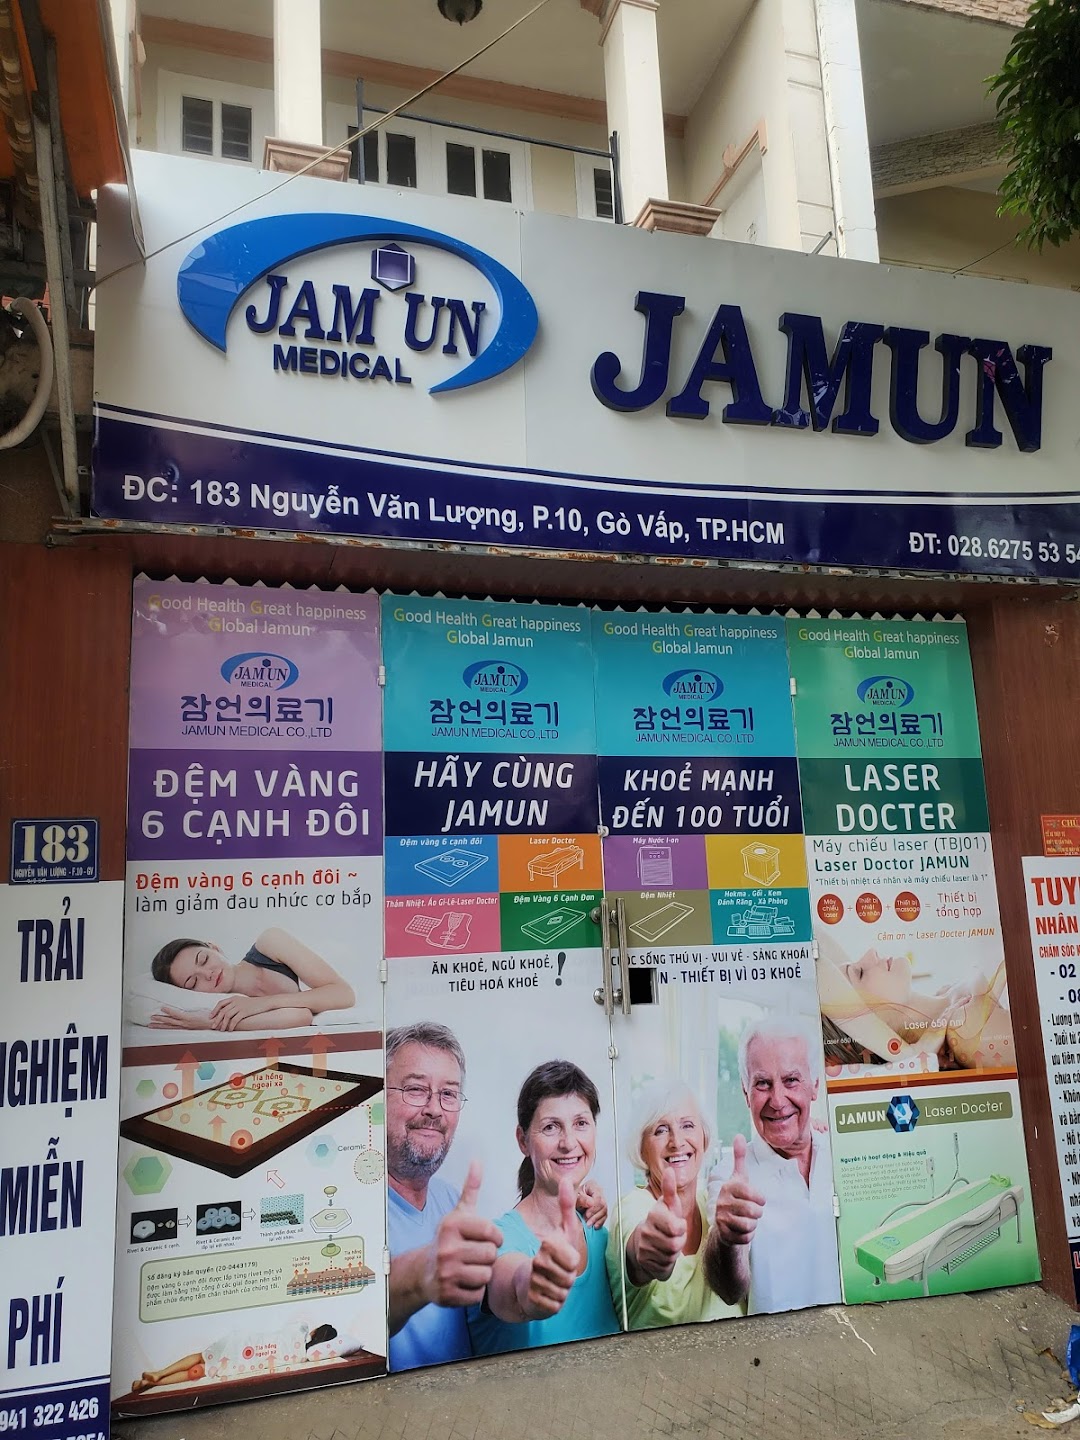 Jamun Medical